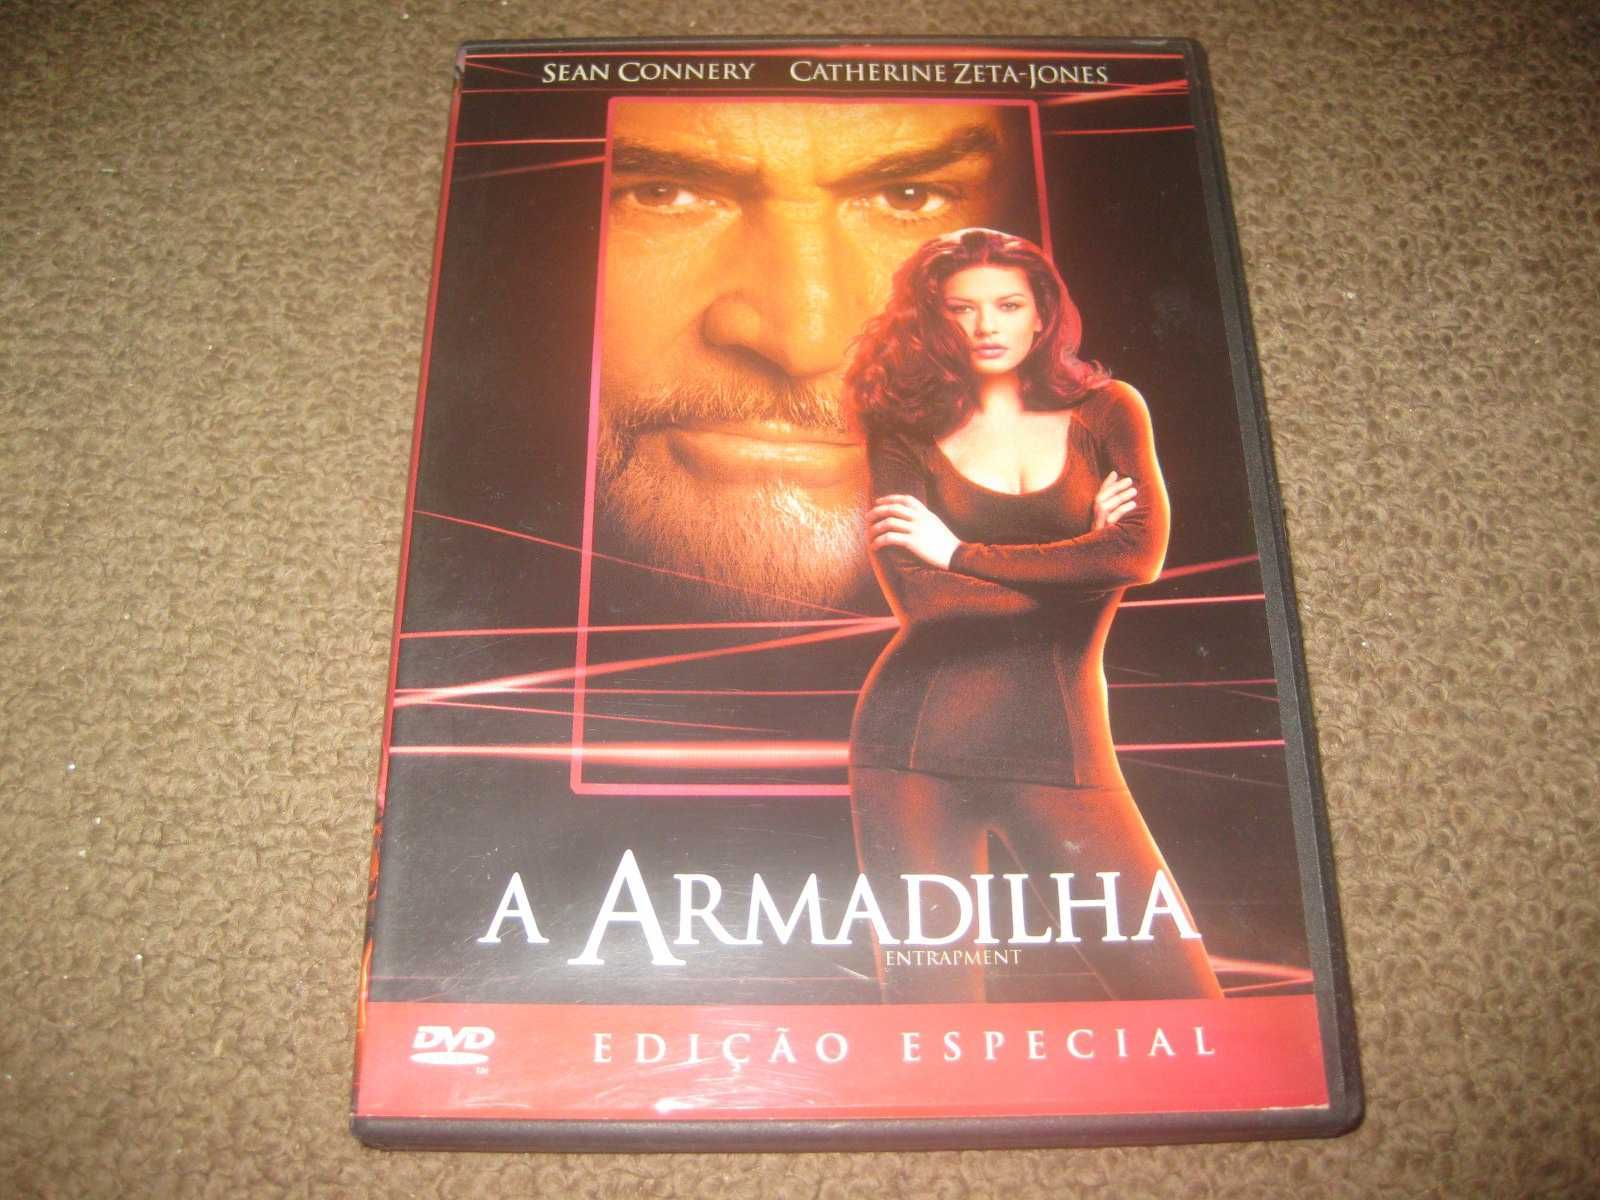 DVD "A Armadilha" com Sean Connery